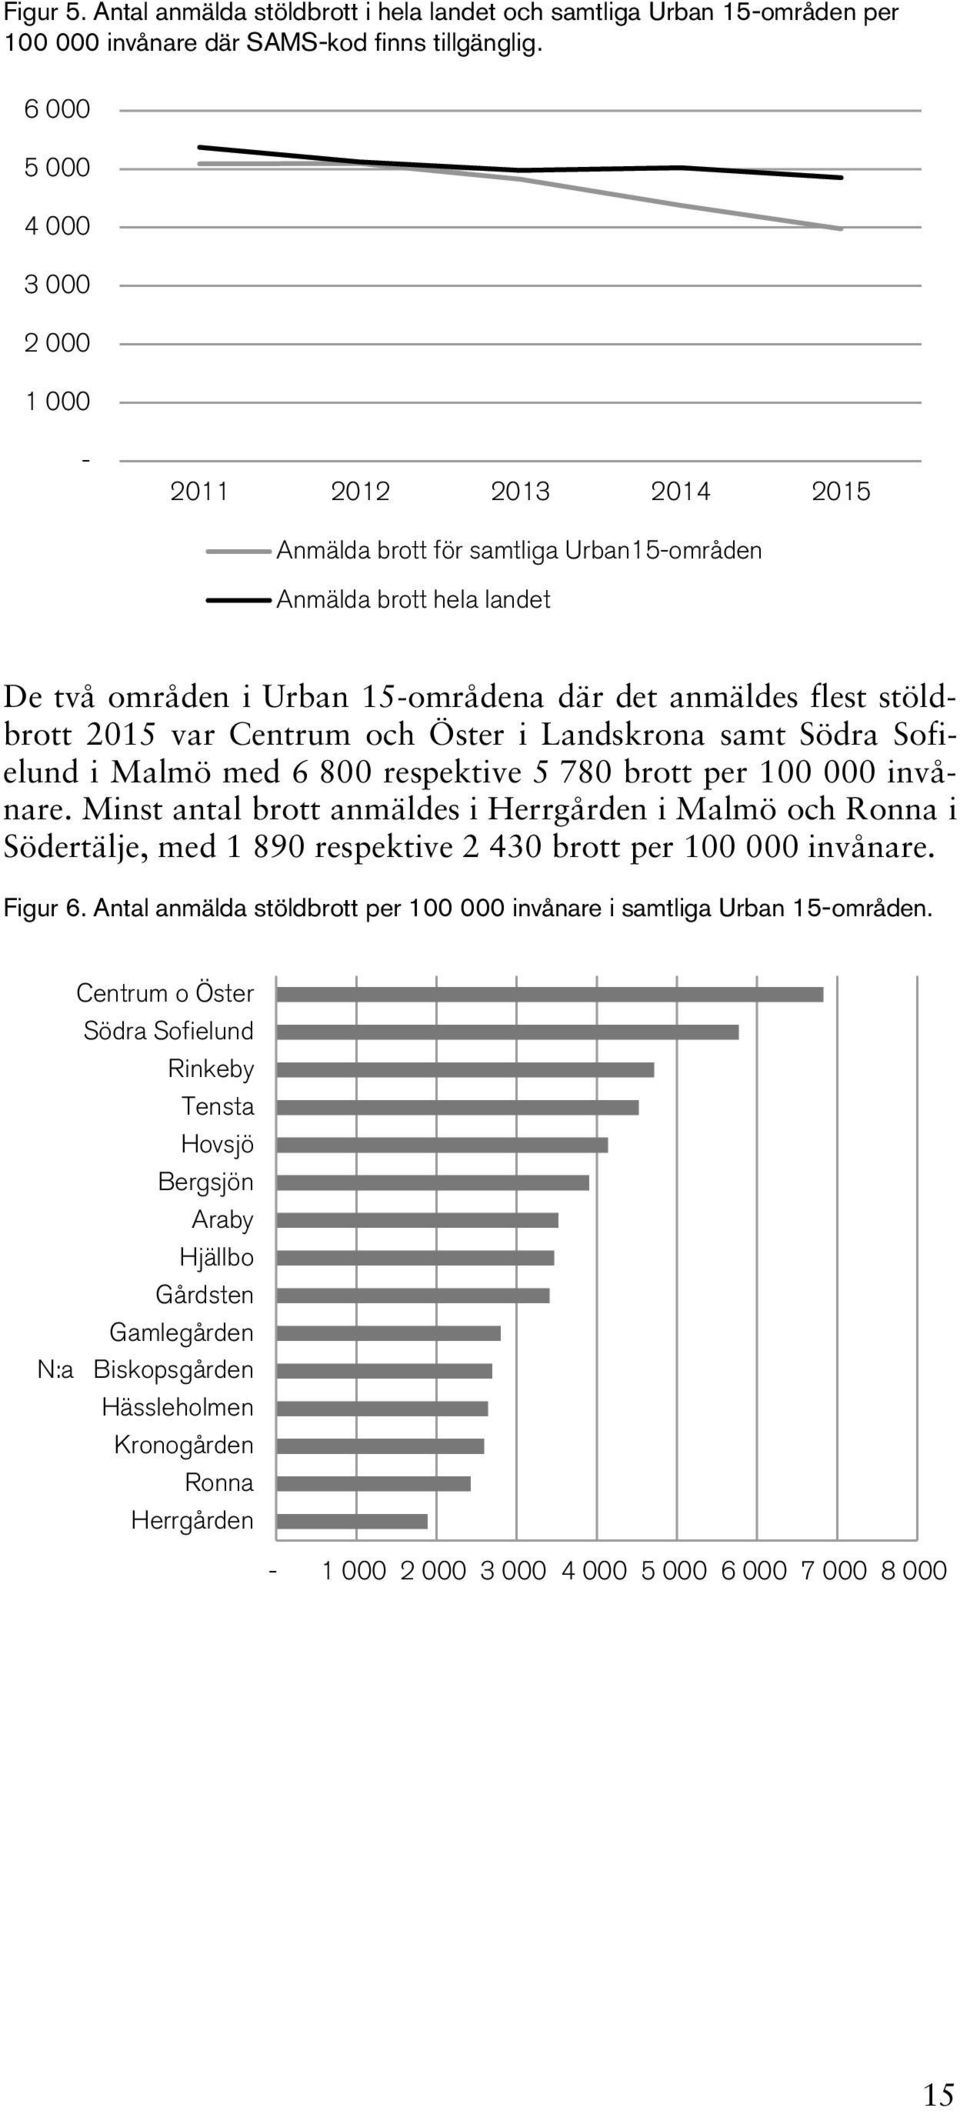 2015 var Centrum och Öster i Landskrona samt Södra Sofielund i Malmö med 6 800 respektive 5 780 brott per 100 000 invånare.